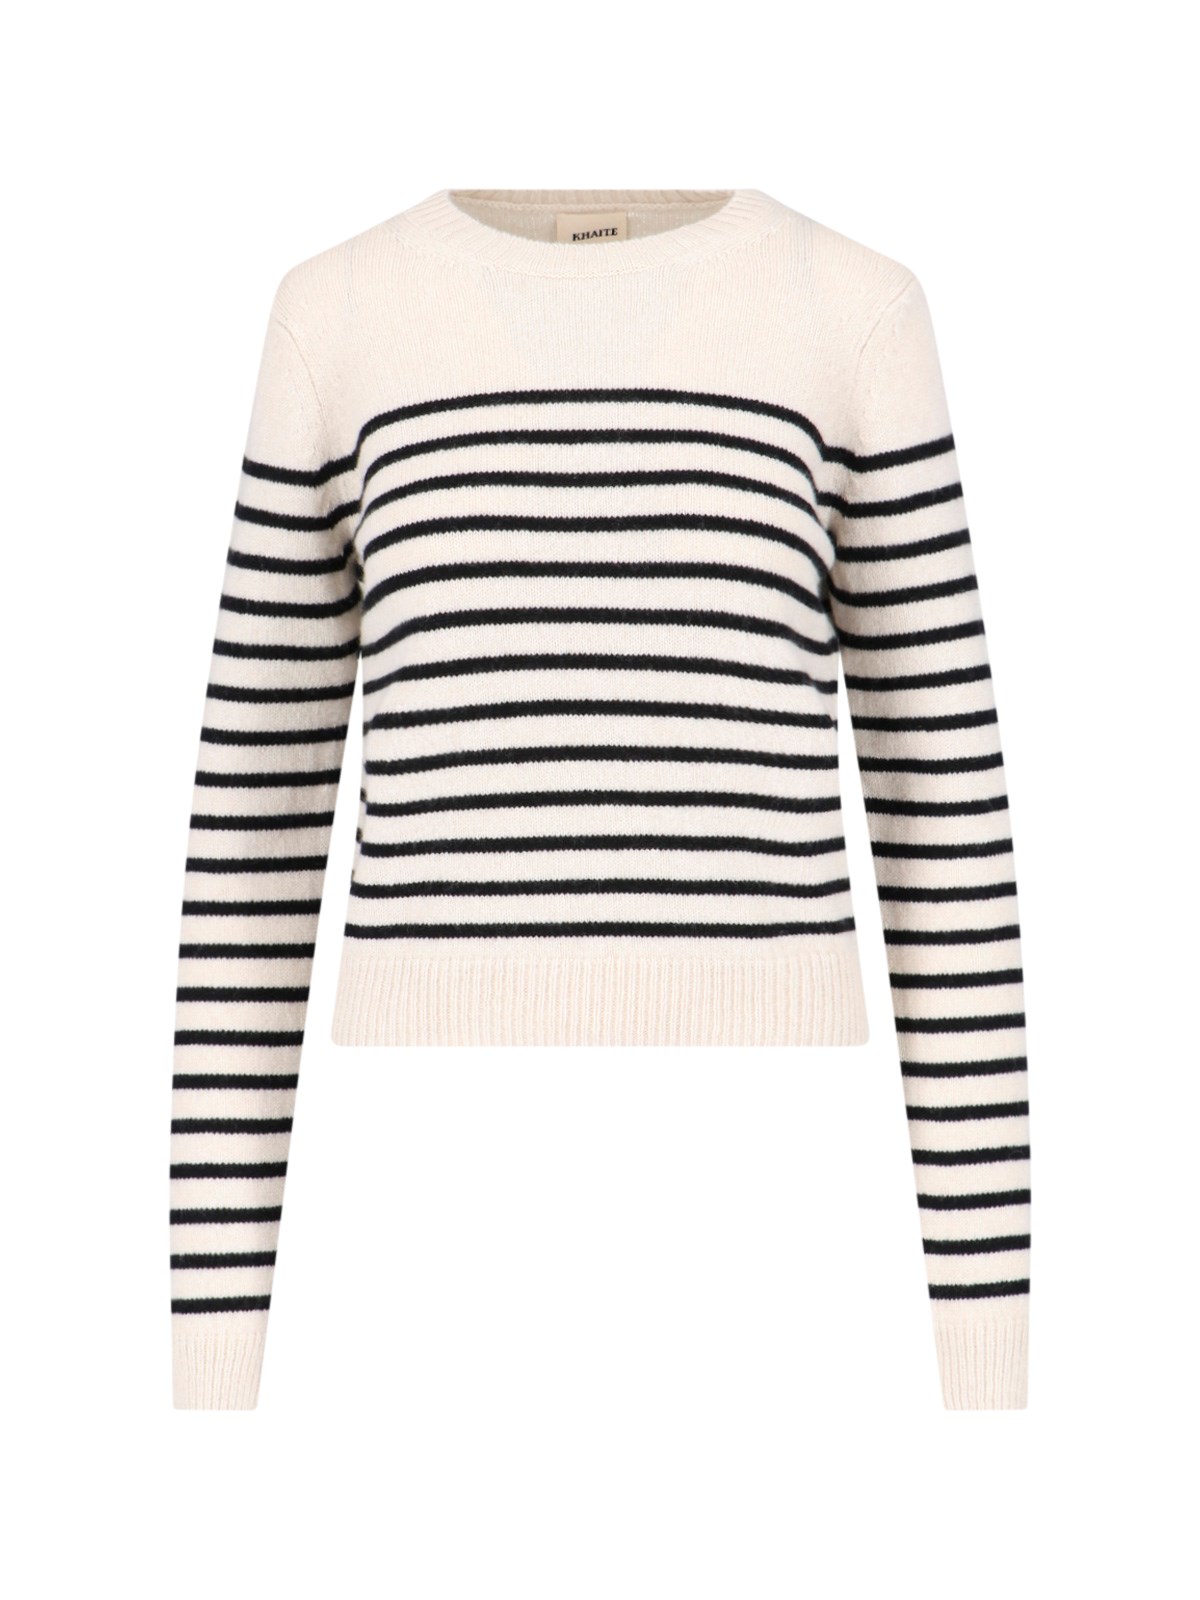 Shop Khaite Striped Sweater In Cream